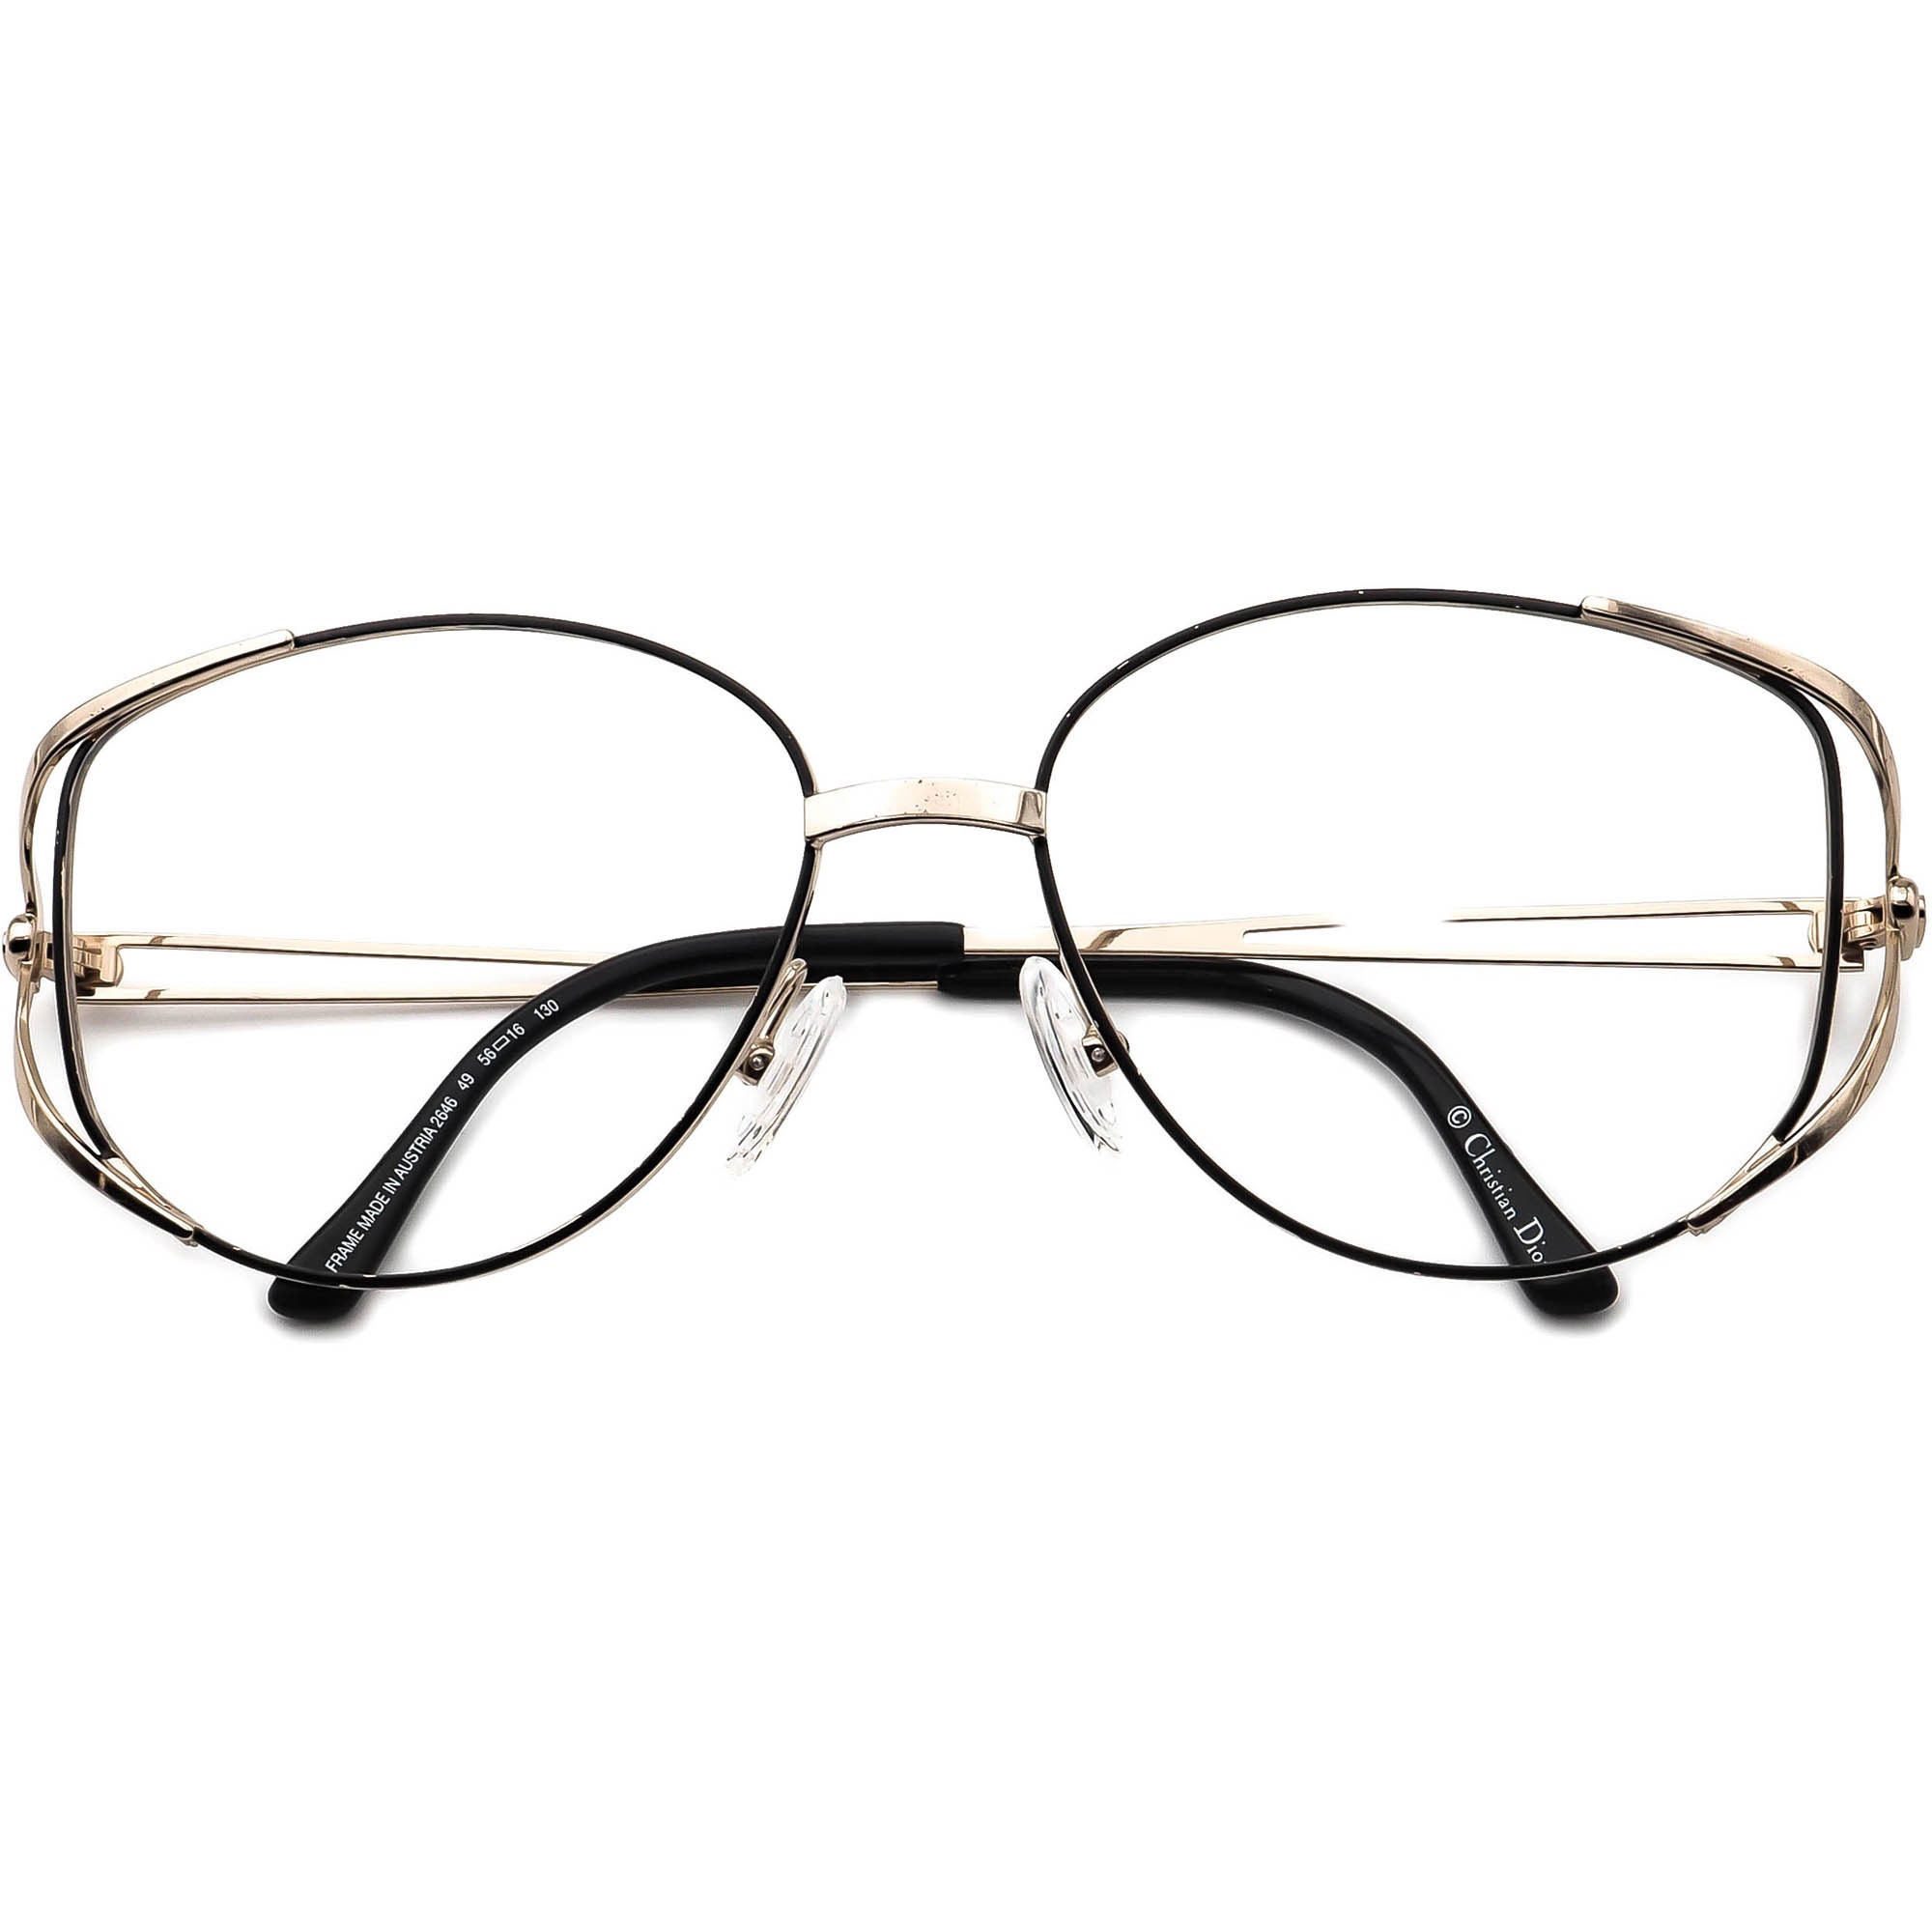 Christian Dior Eyeglasses 2646 49 Gold/black Metal Frame - Etsy Israel